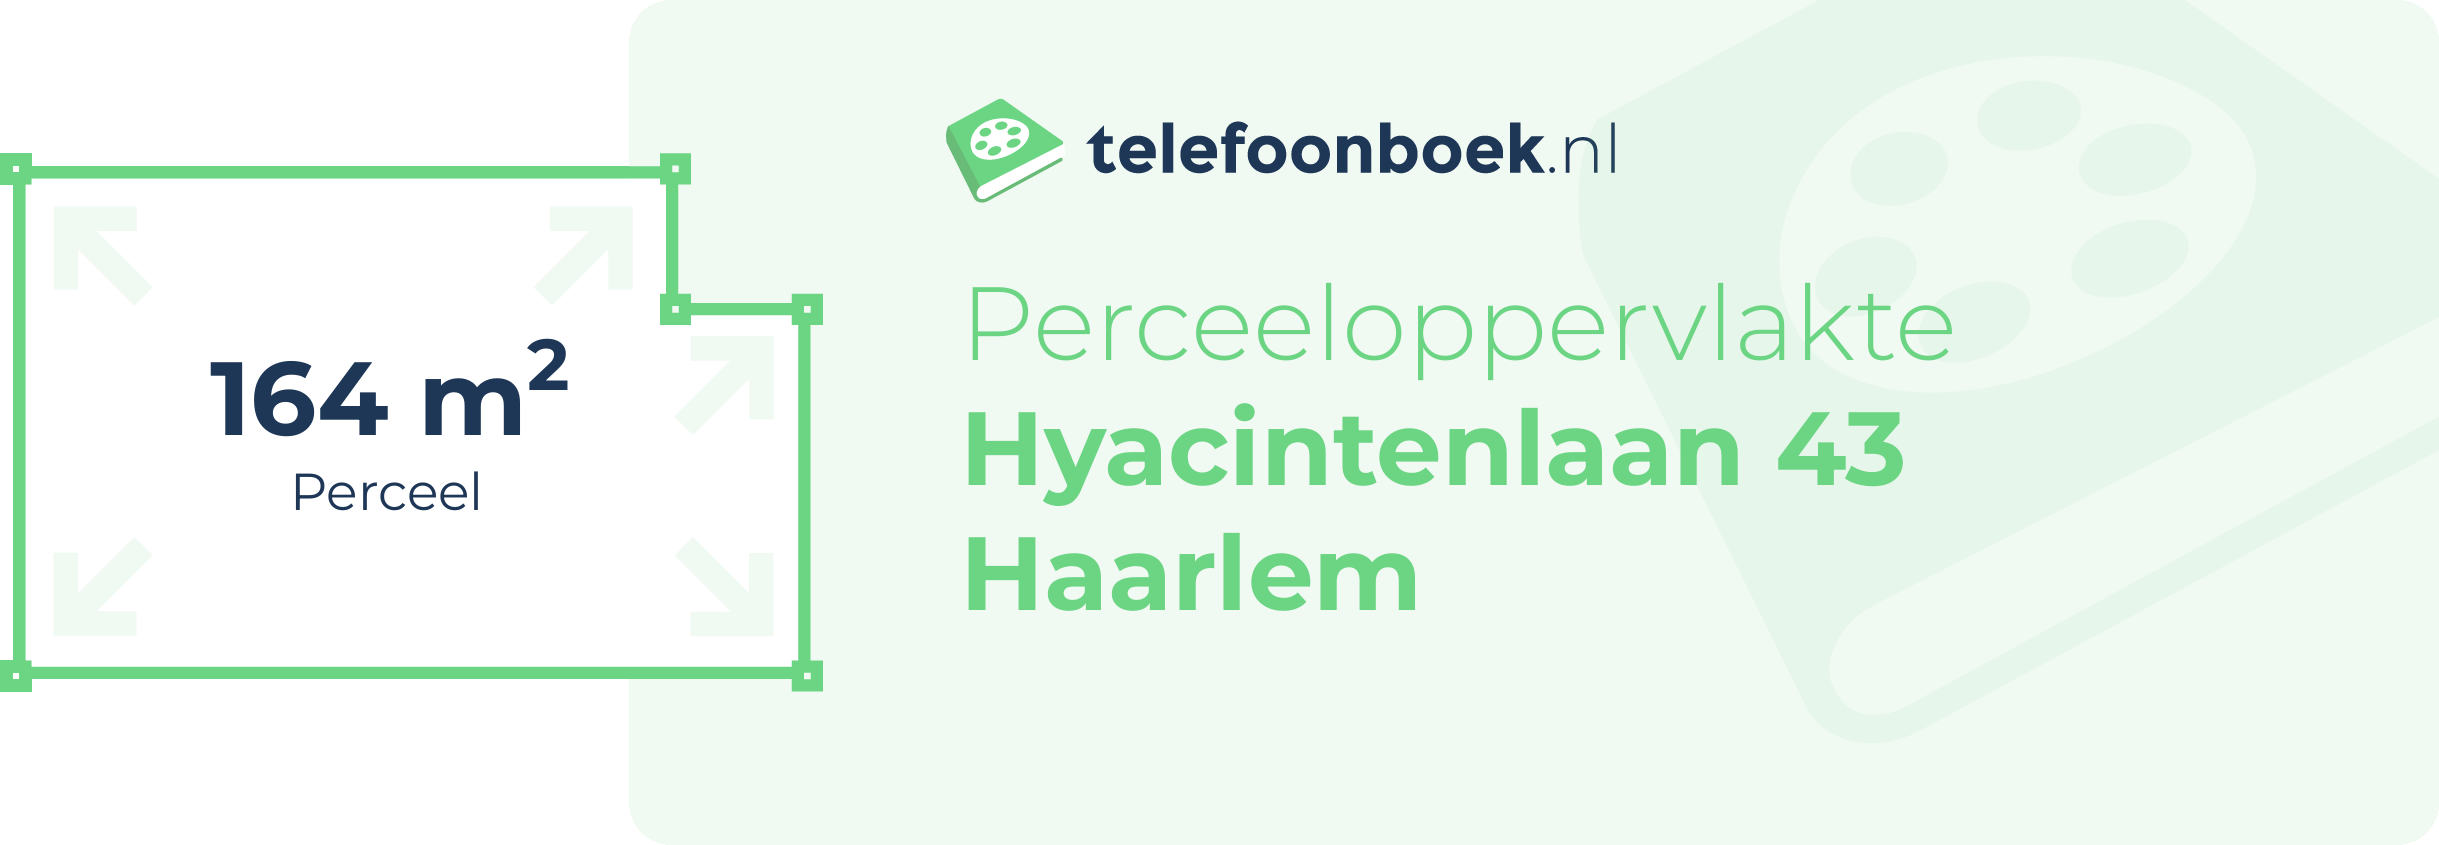 Perceeloppervlakte Hyacintenlaan 43 Haarlem